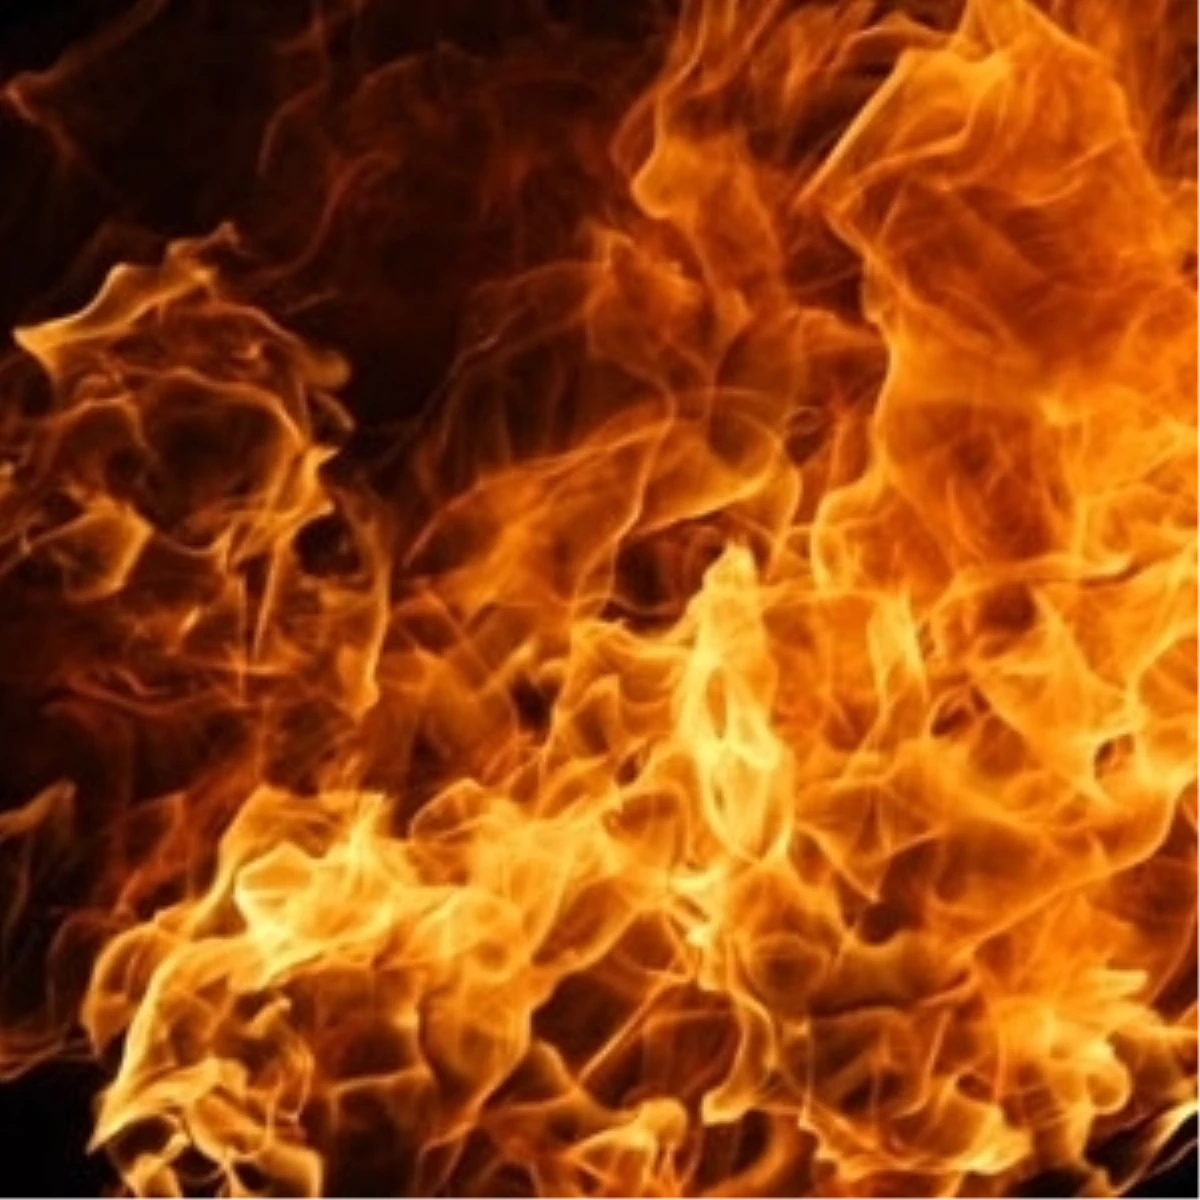 Mobilya Atölyesinde Başlayan Yangın Hasara Neden Oldu